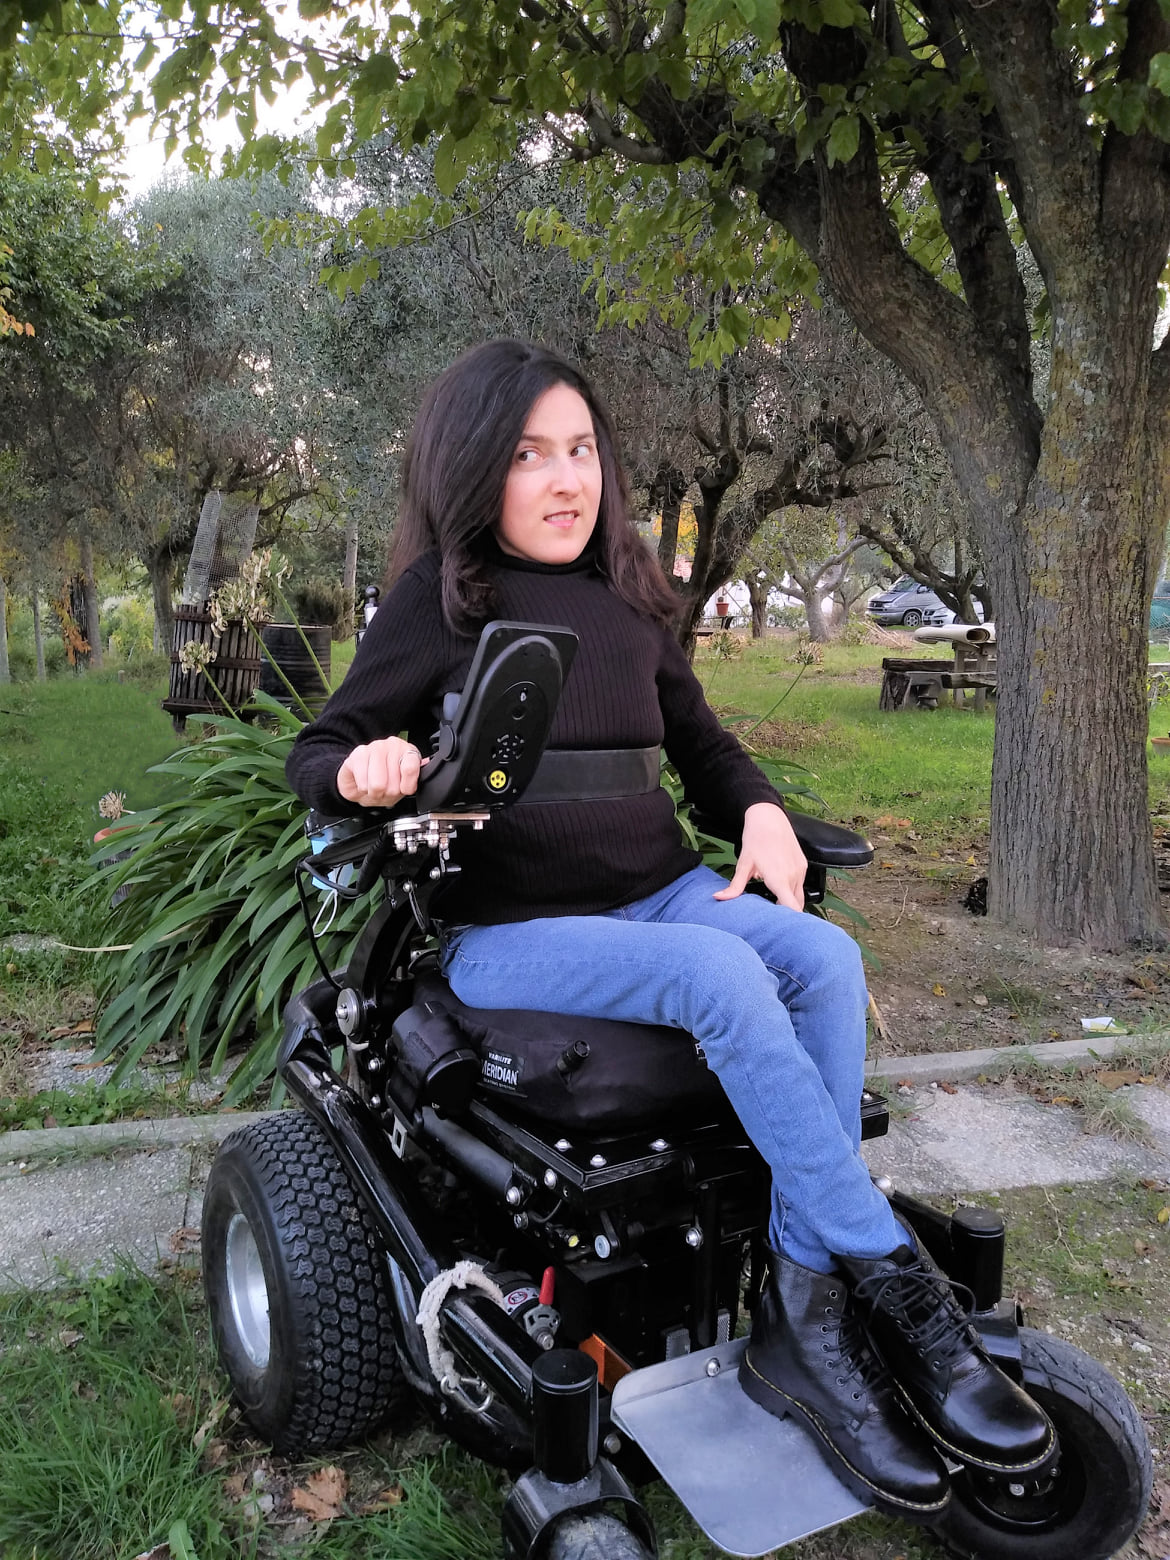 Maria Chiara indossa una maglia nera a collo alto, jeans blu e anfibi neri e guarda di lato. Sullo sfondo, un giardino.